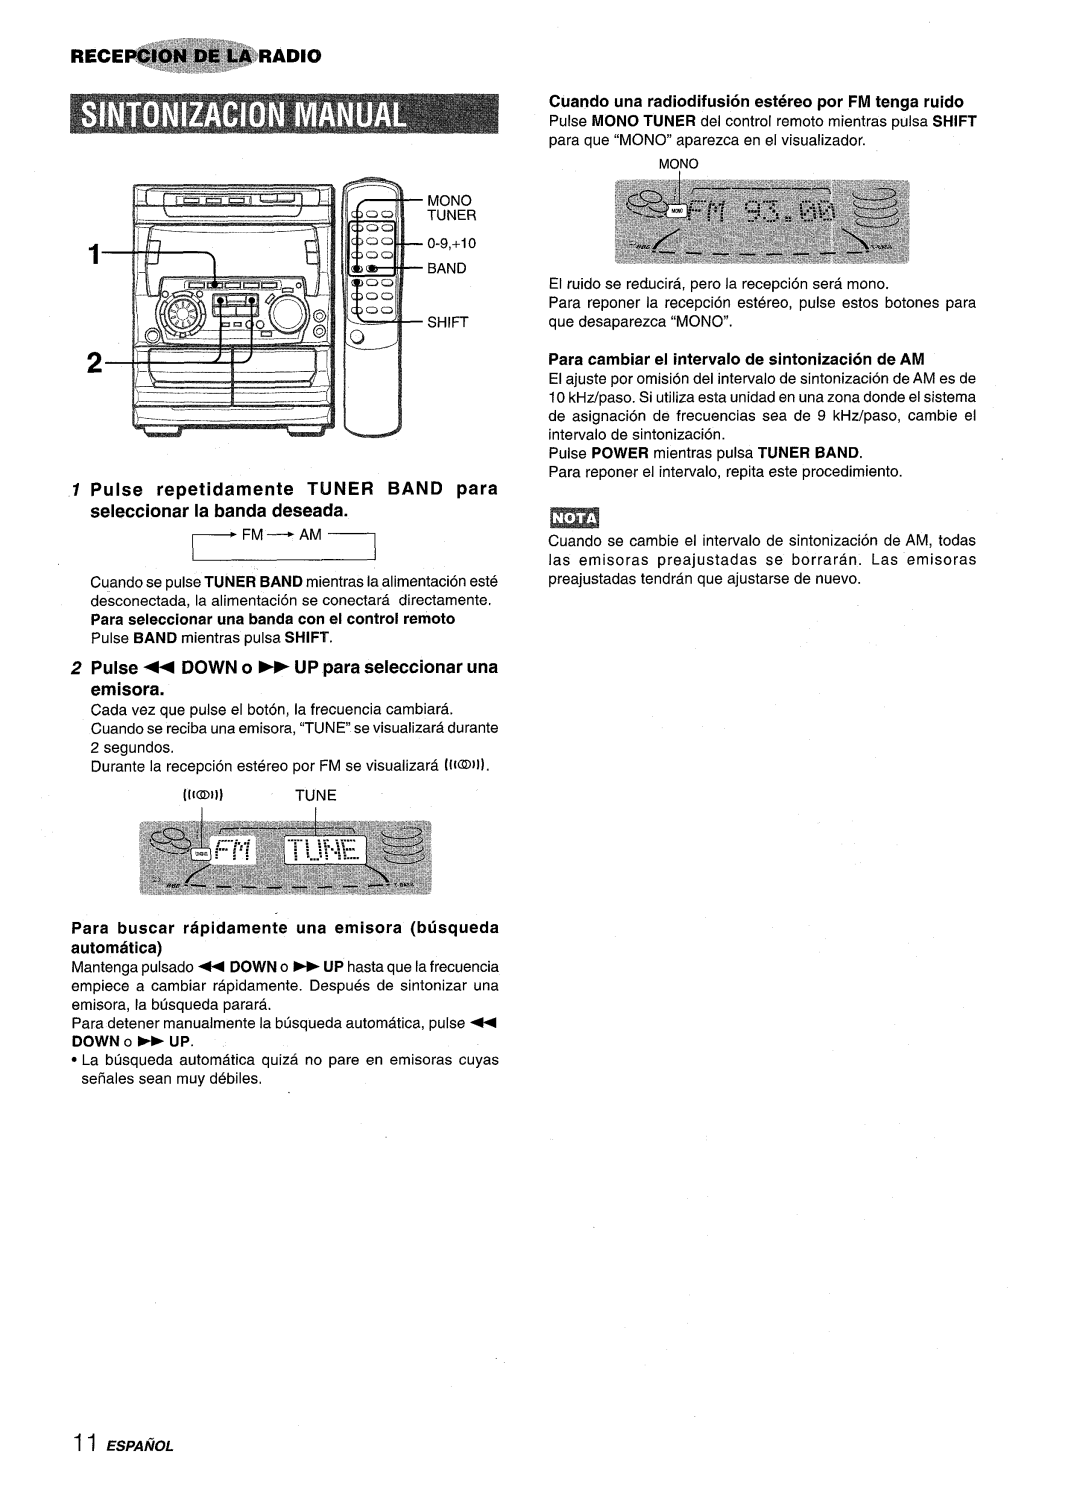 Sony NSX-A707 manual Pulse repetidamente TUNER BAND para seleccionar la banda deseada, automatic, Mantenga pulsado + DOWN 